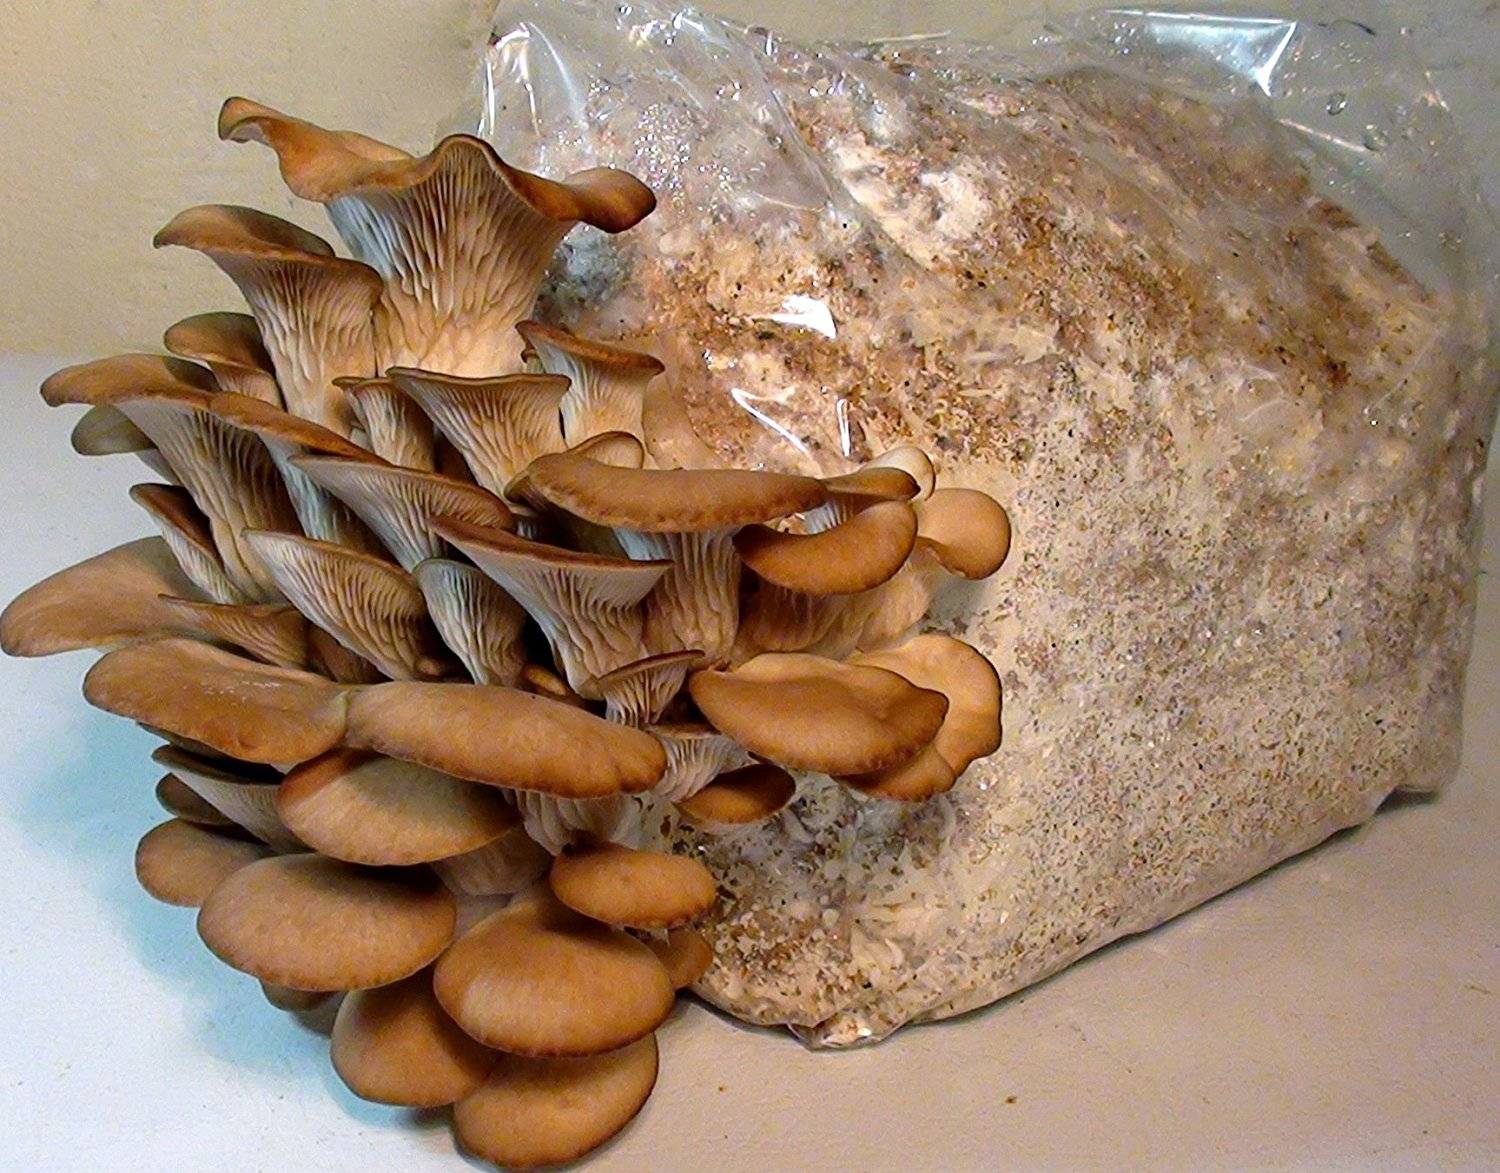 Технология выращивания грибов в домашних условиях.